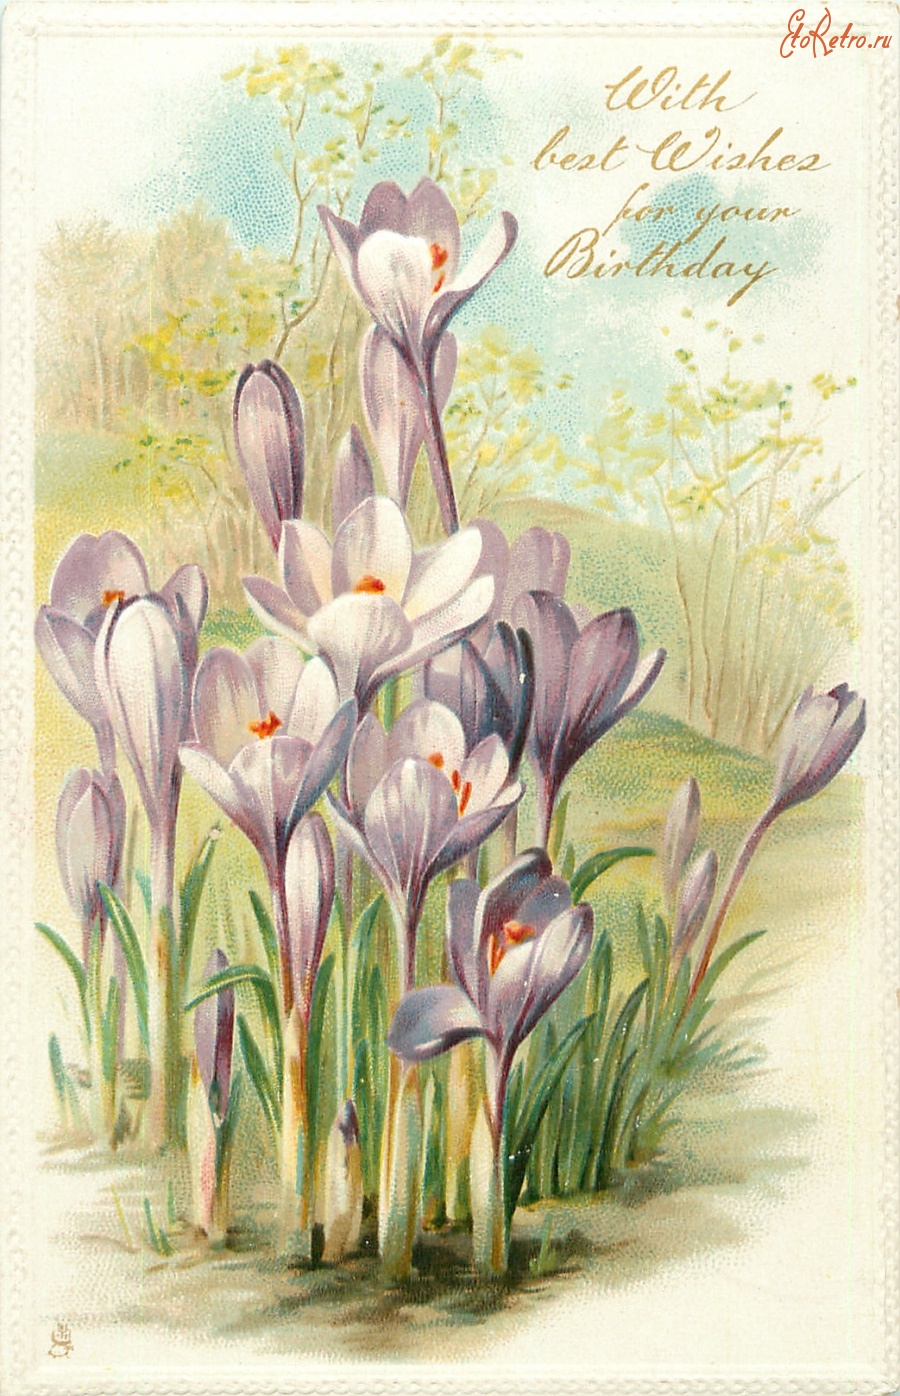 Ретро открытки - Фиолетовые крокусы с лучшими пожеланиями